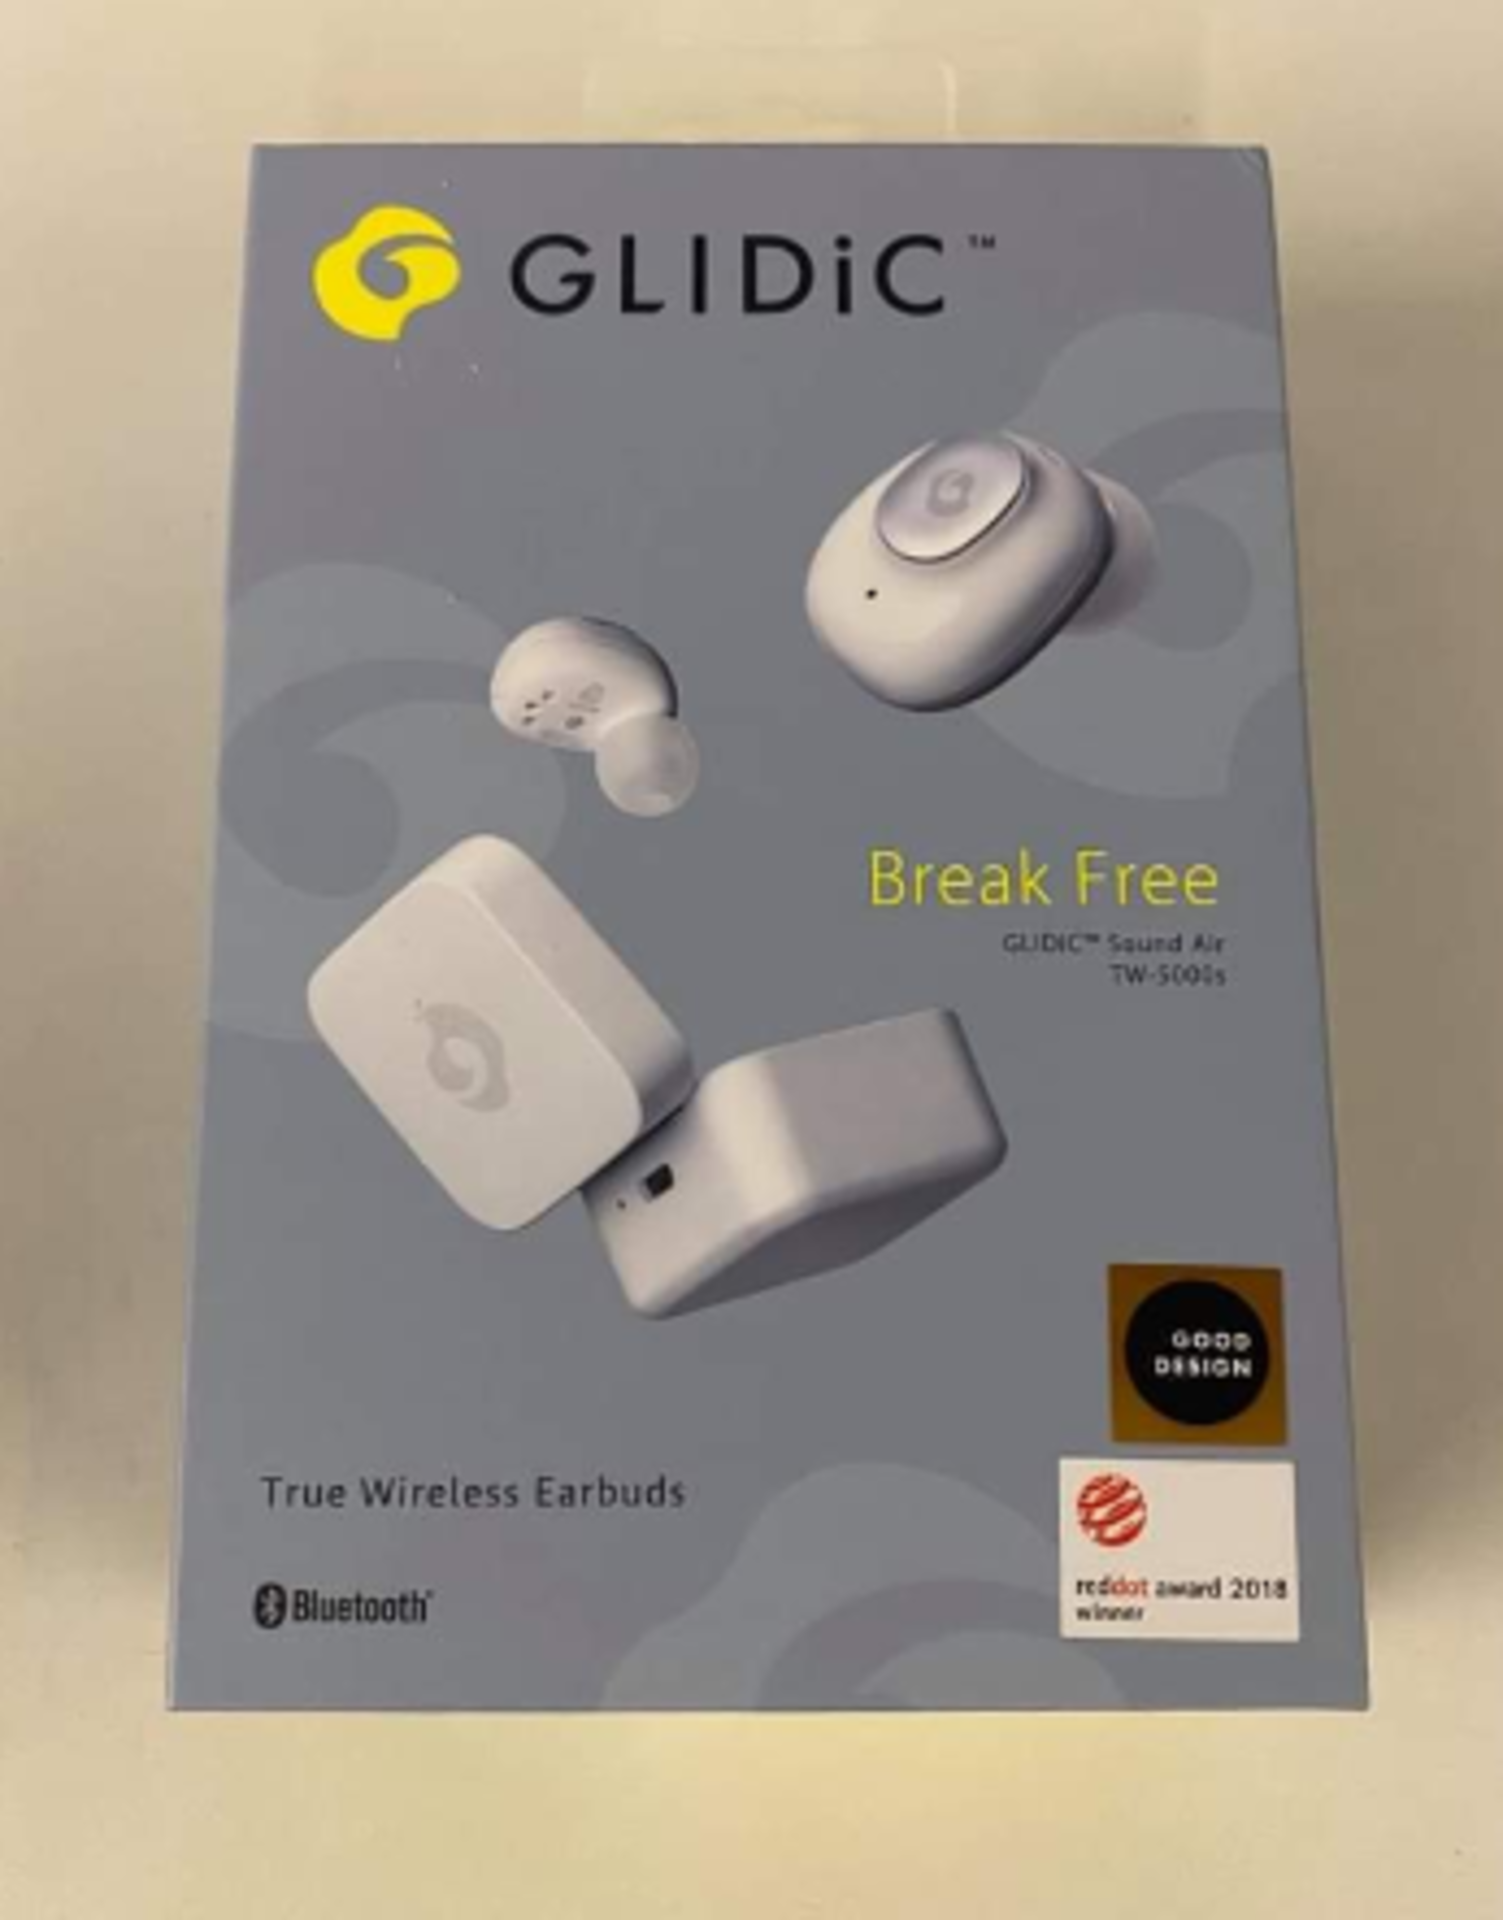 Glidic Sound Air Tw-5000S True Wireless Earbuds - Brand New Still Sealed - White